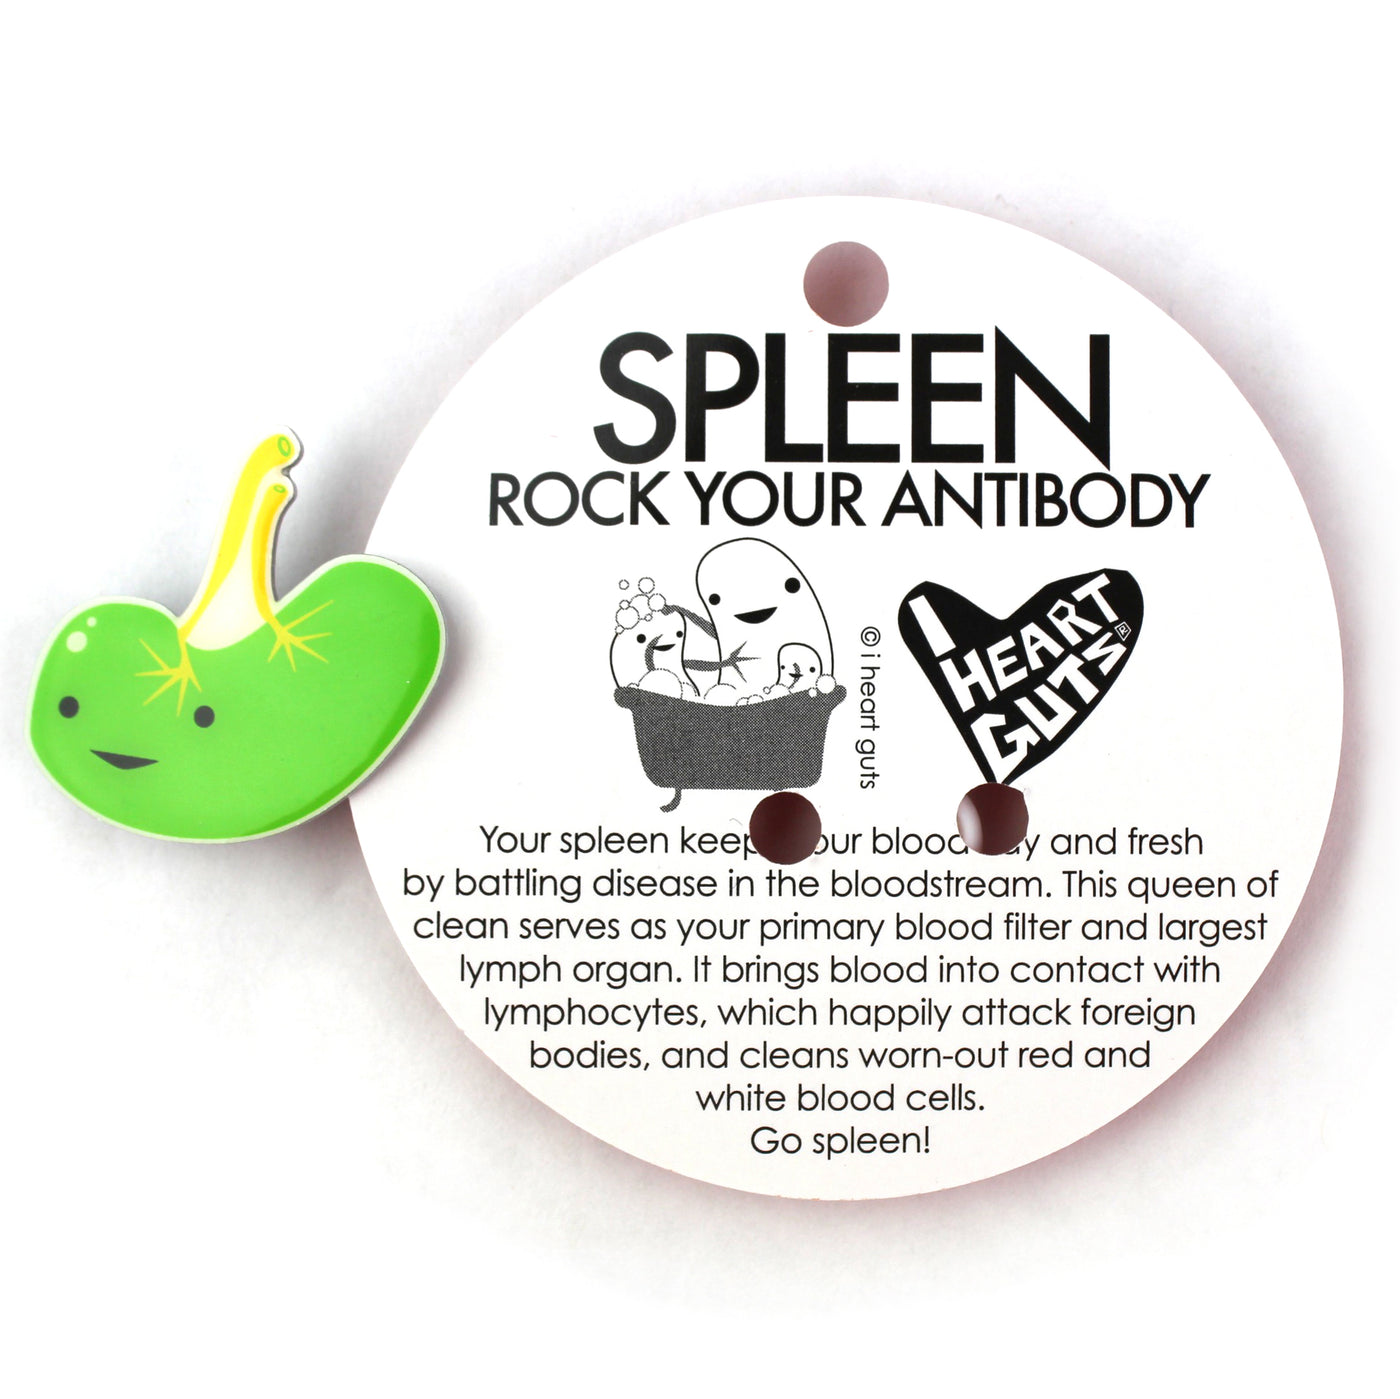 Spleen Lapel Pin - Spleen Removal Funny Pin - Mono Spleen Surgery Gift